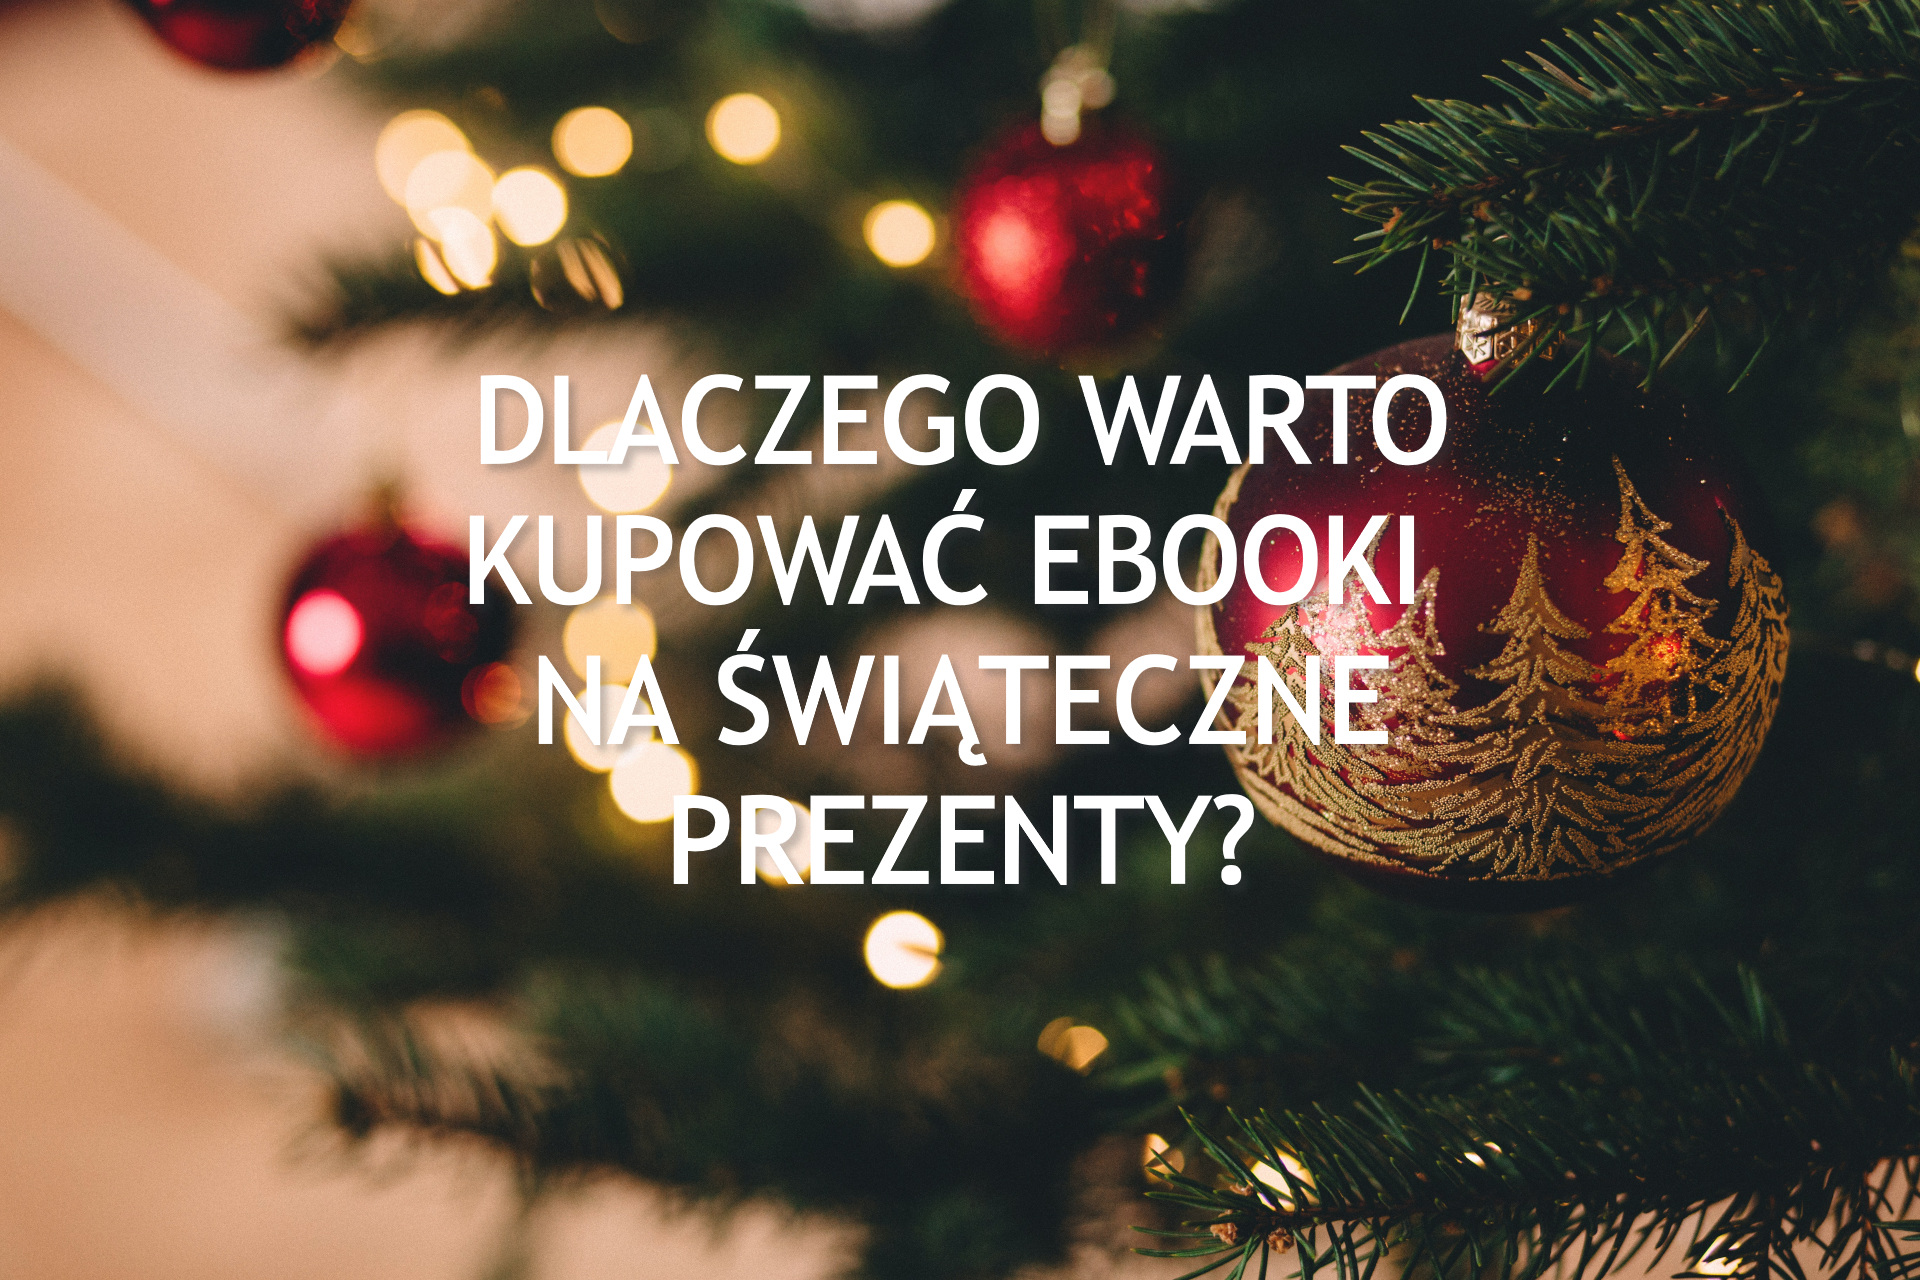 Dlaczego warto kupować ebooki na świąteczne prezenty? - www.naczytniku.pl